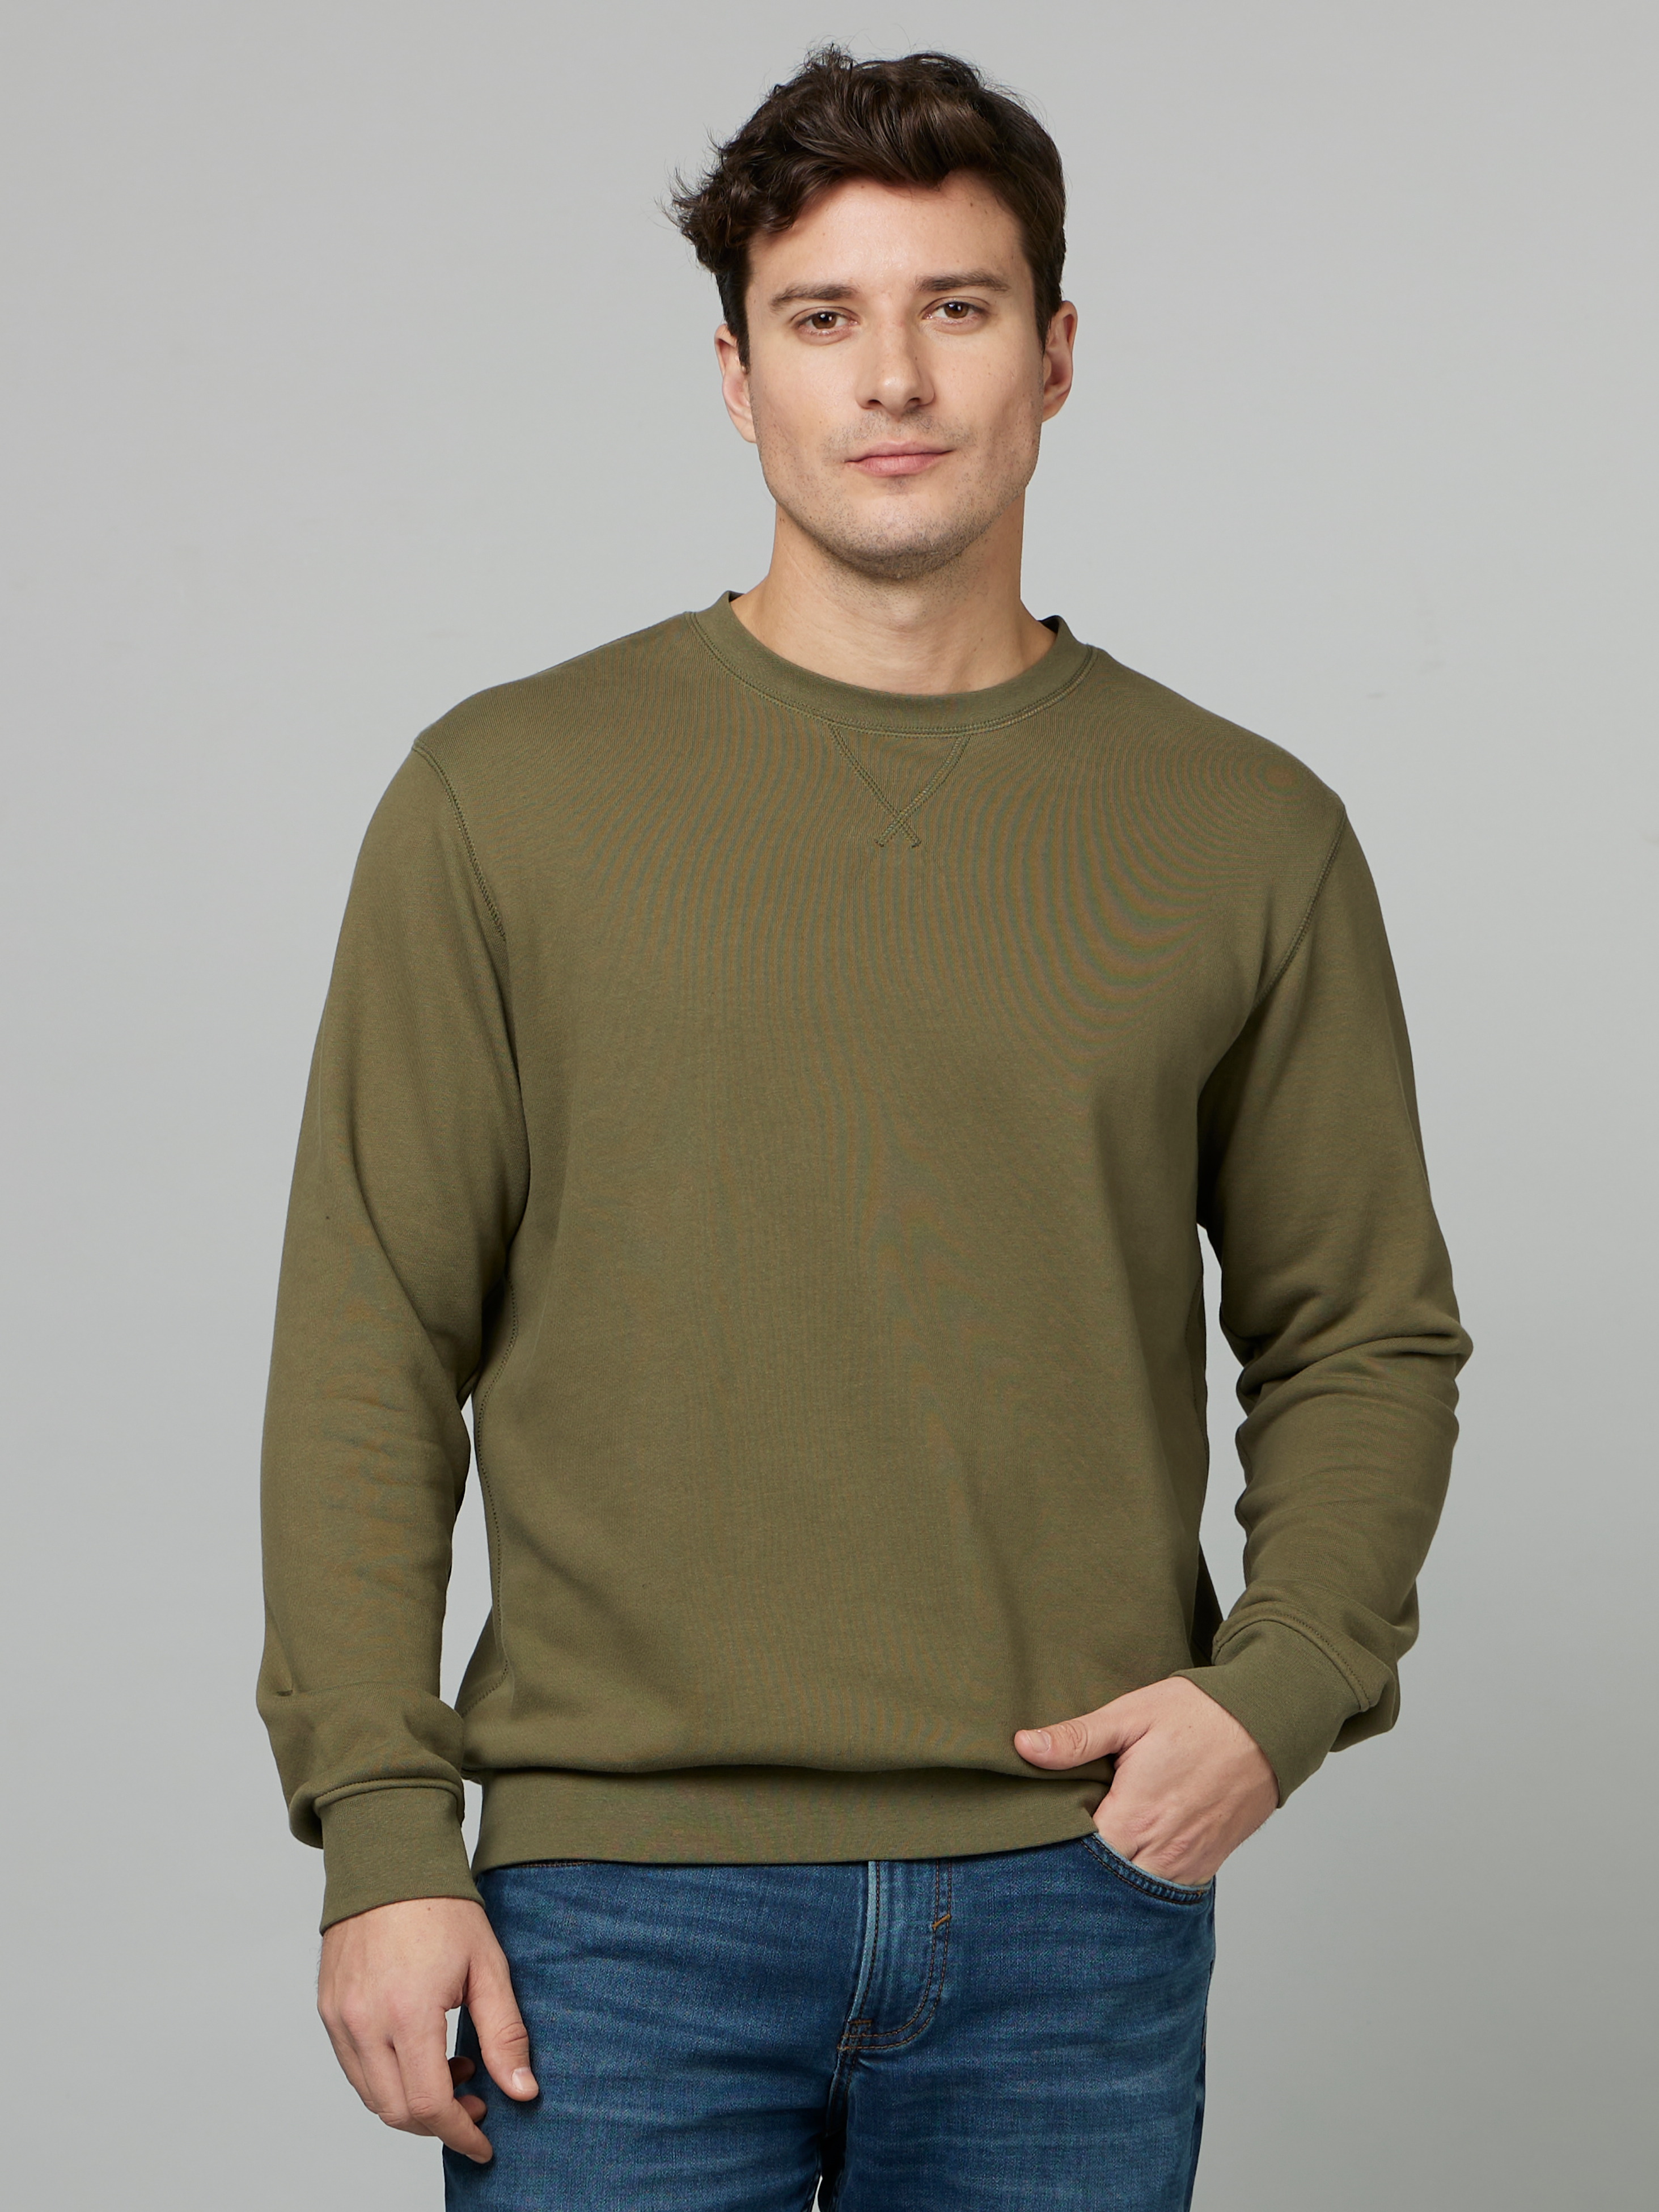 Men's Brown Solid Sweatshirts